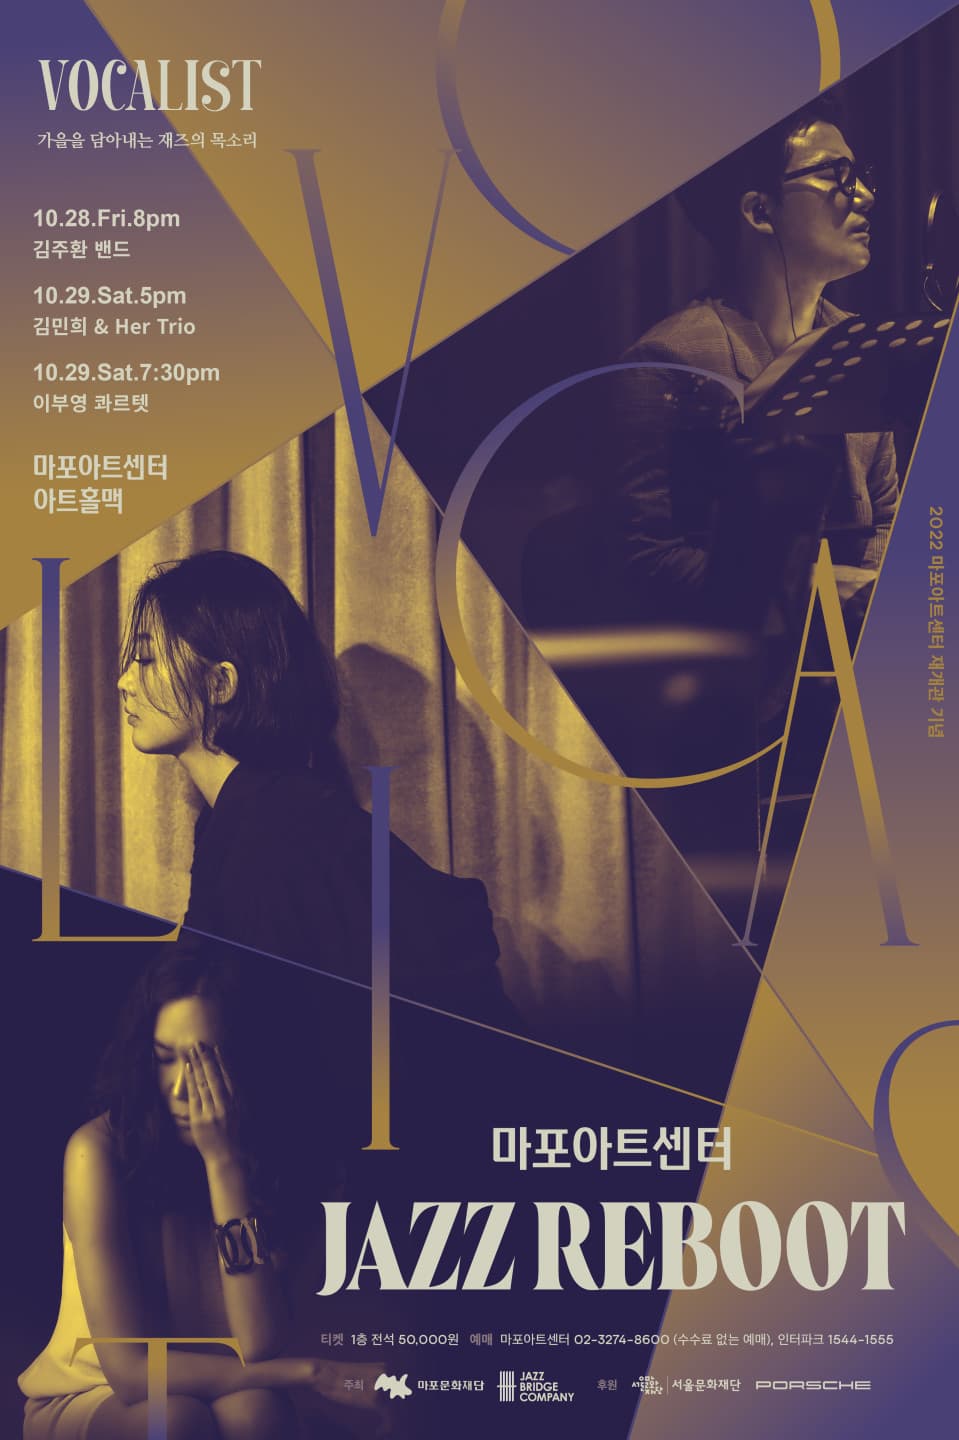 [음악]마포아트센터 JAZZ REBOOT -VOCALIST - 김민희 & Her Trio